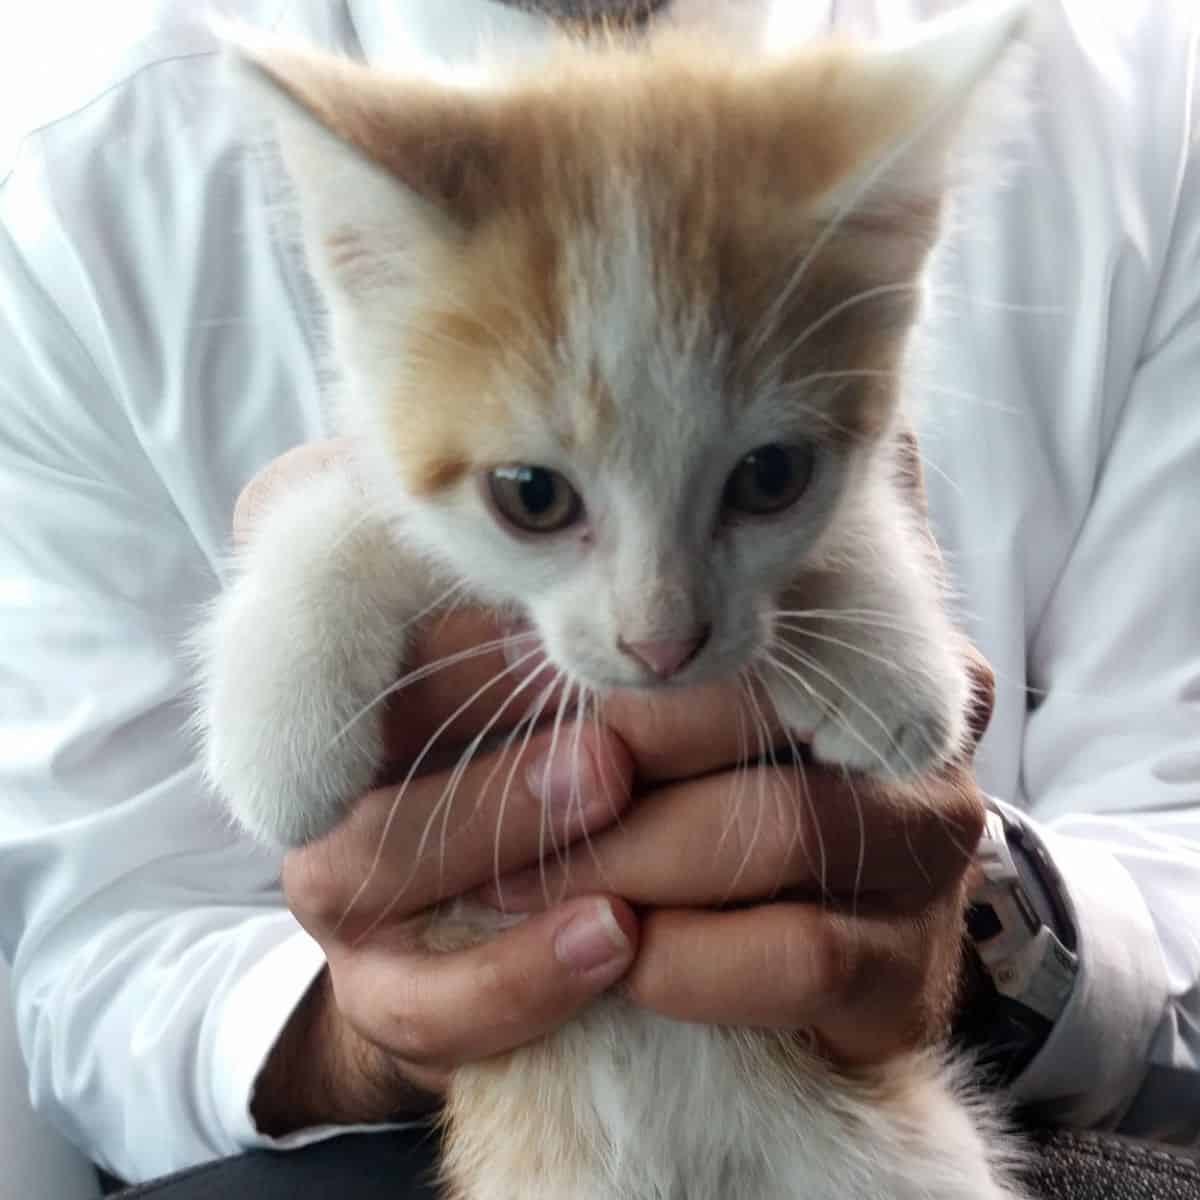 kitten in hands in front of camera